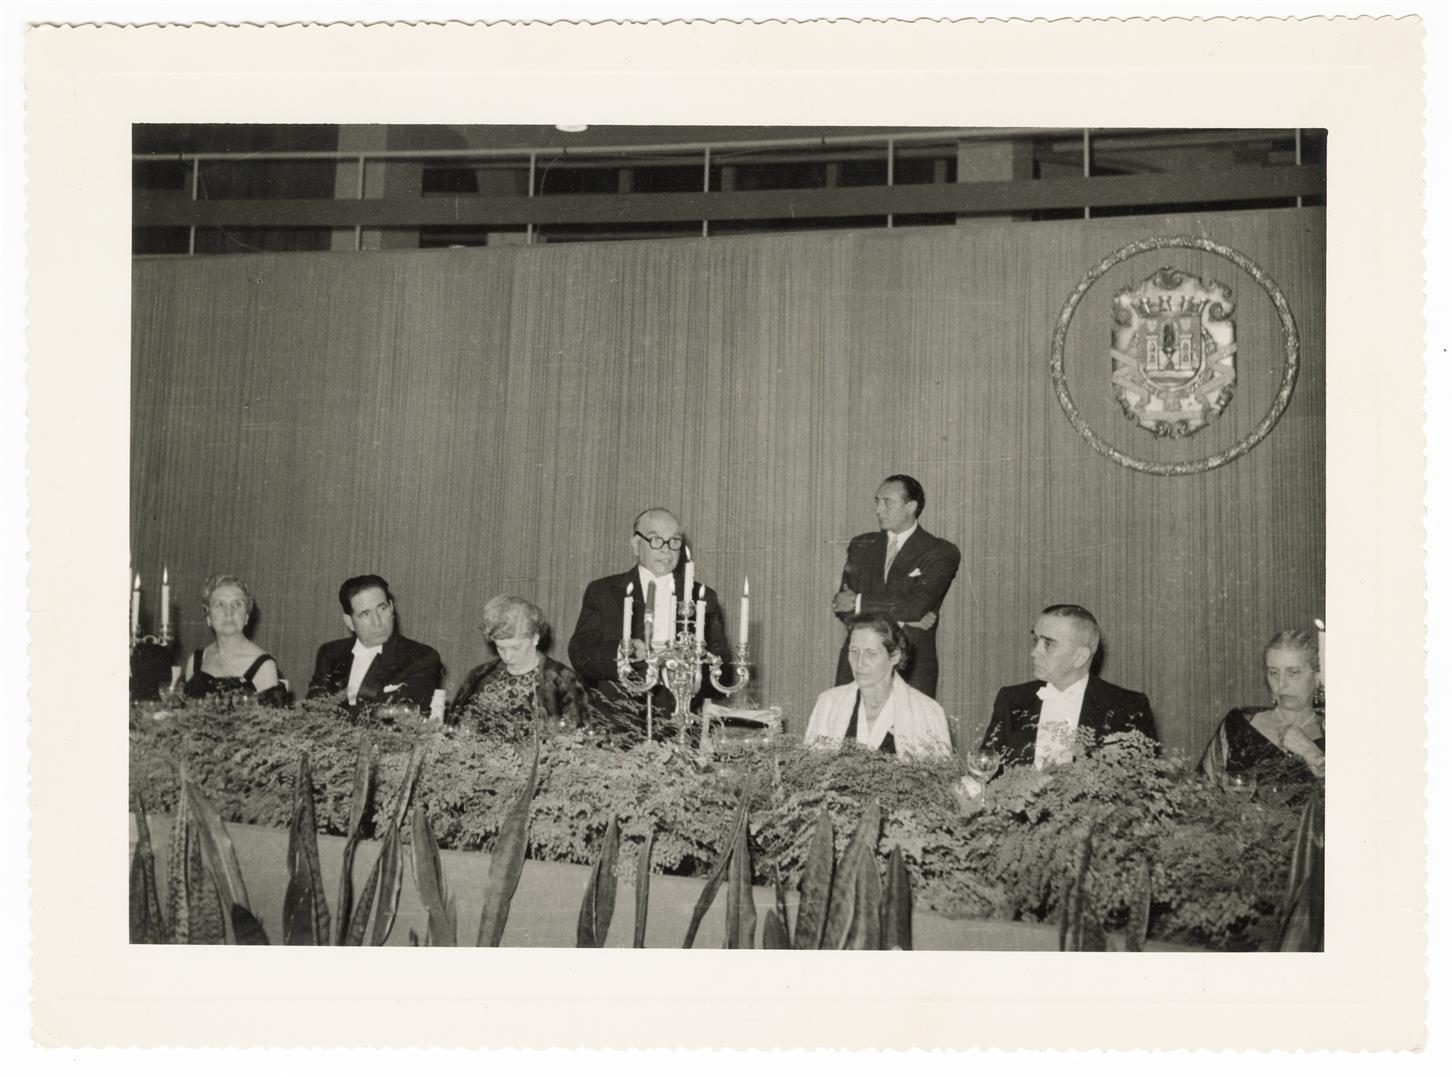 V Congresso Internacional de Pontes e Estruturas : banquete no Palácio de Cristal